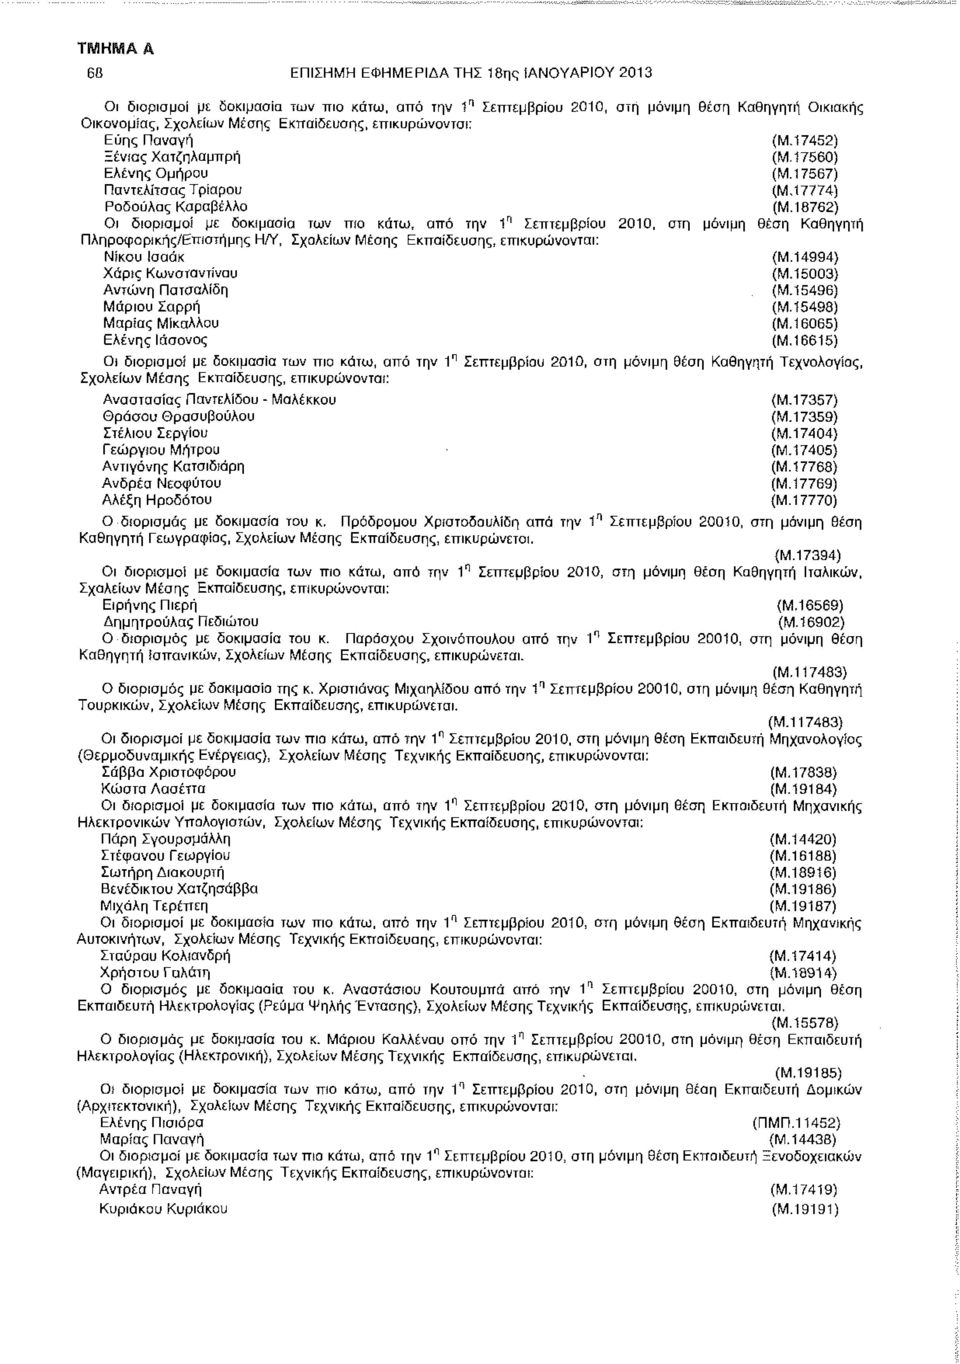 18762) Οι διορισμοί με δοκιμασία των πιο κάτω, από την 1 Ί Σεπτεμβρίου 2010, στη μόνιμη θέση Καθηγητή Πληροφορικής/Επιστήμης Η/Υ, Νίκου Ισαάκ (Μ.14994} Χάρις Κωνσταντίνου (Μ.